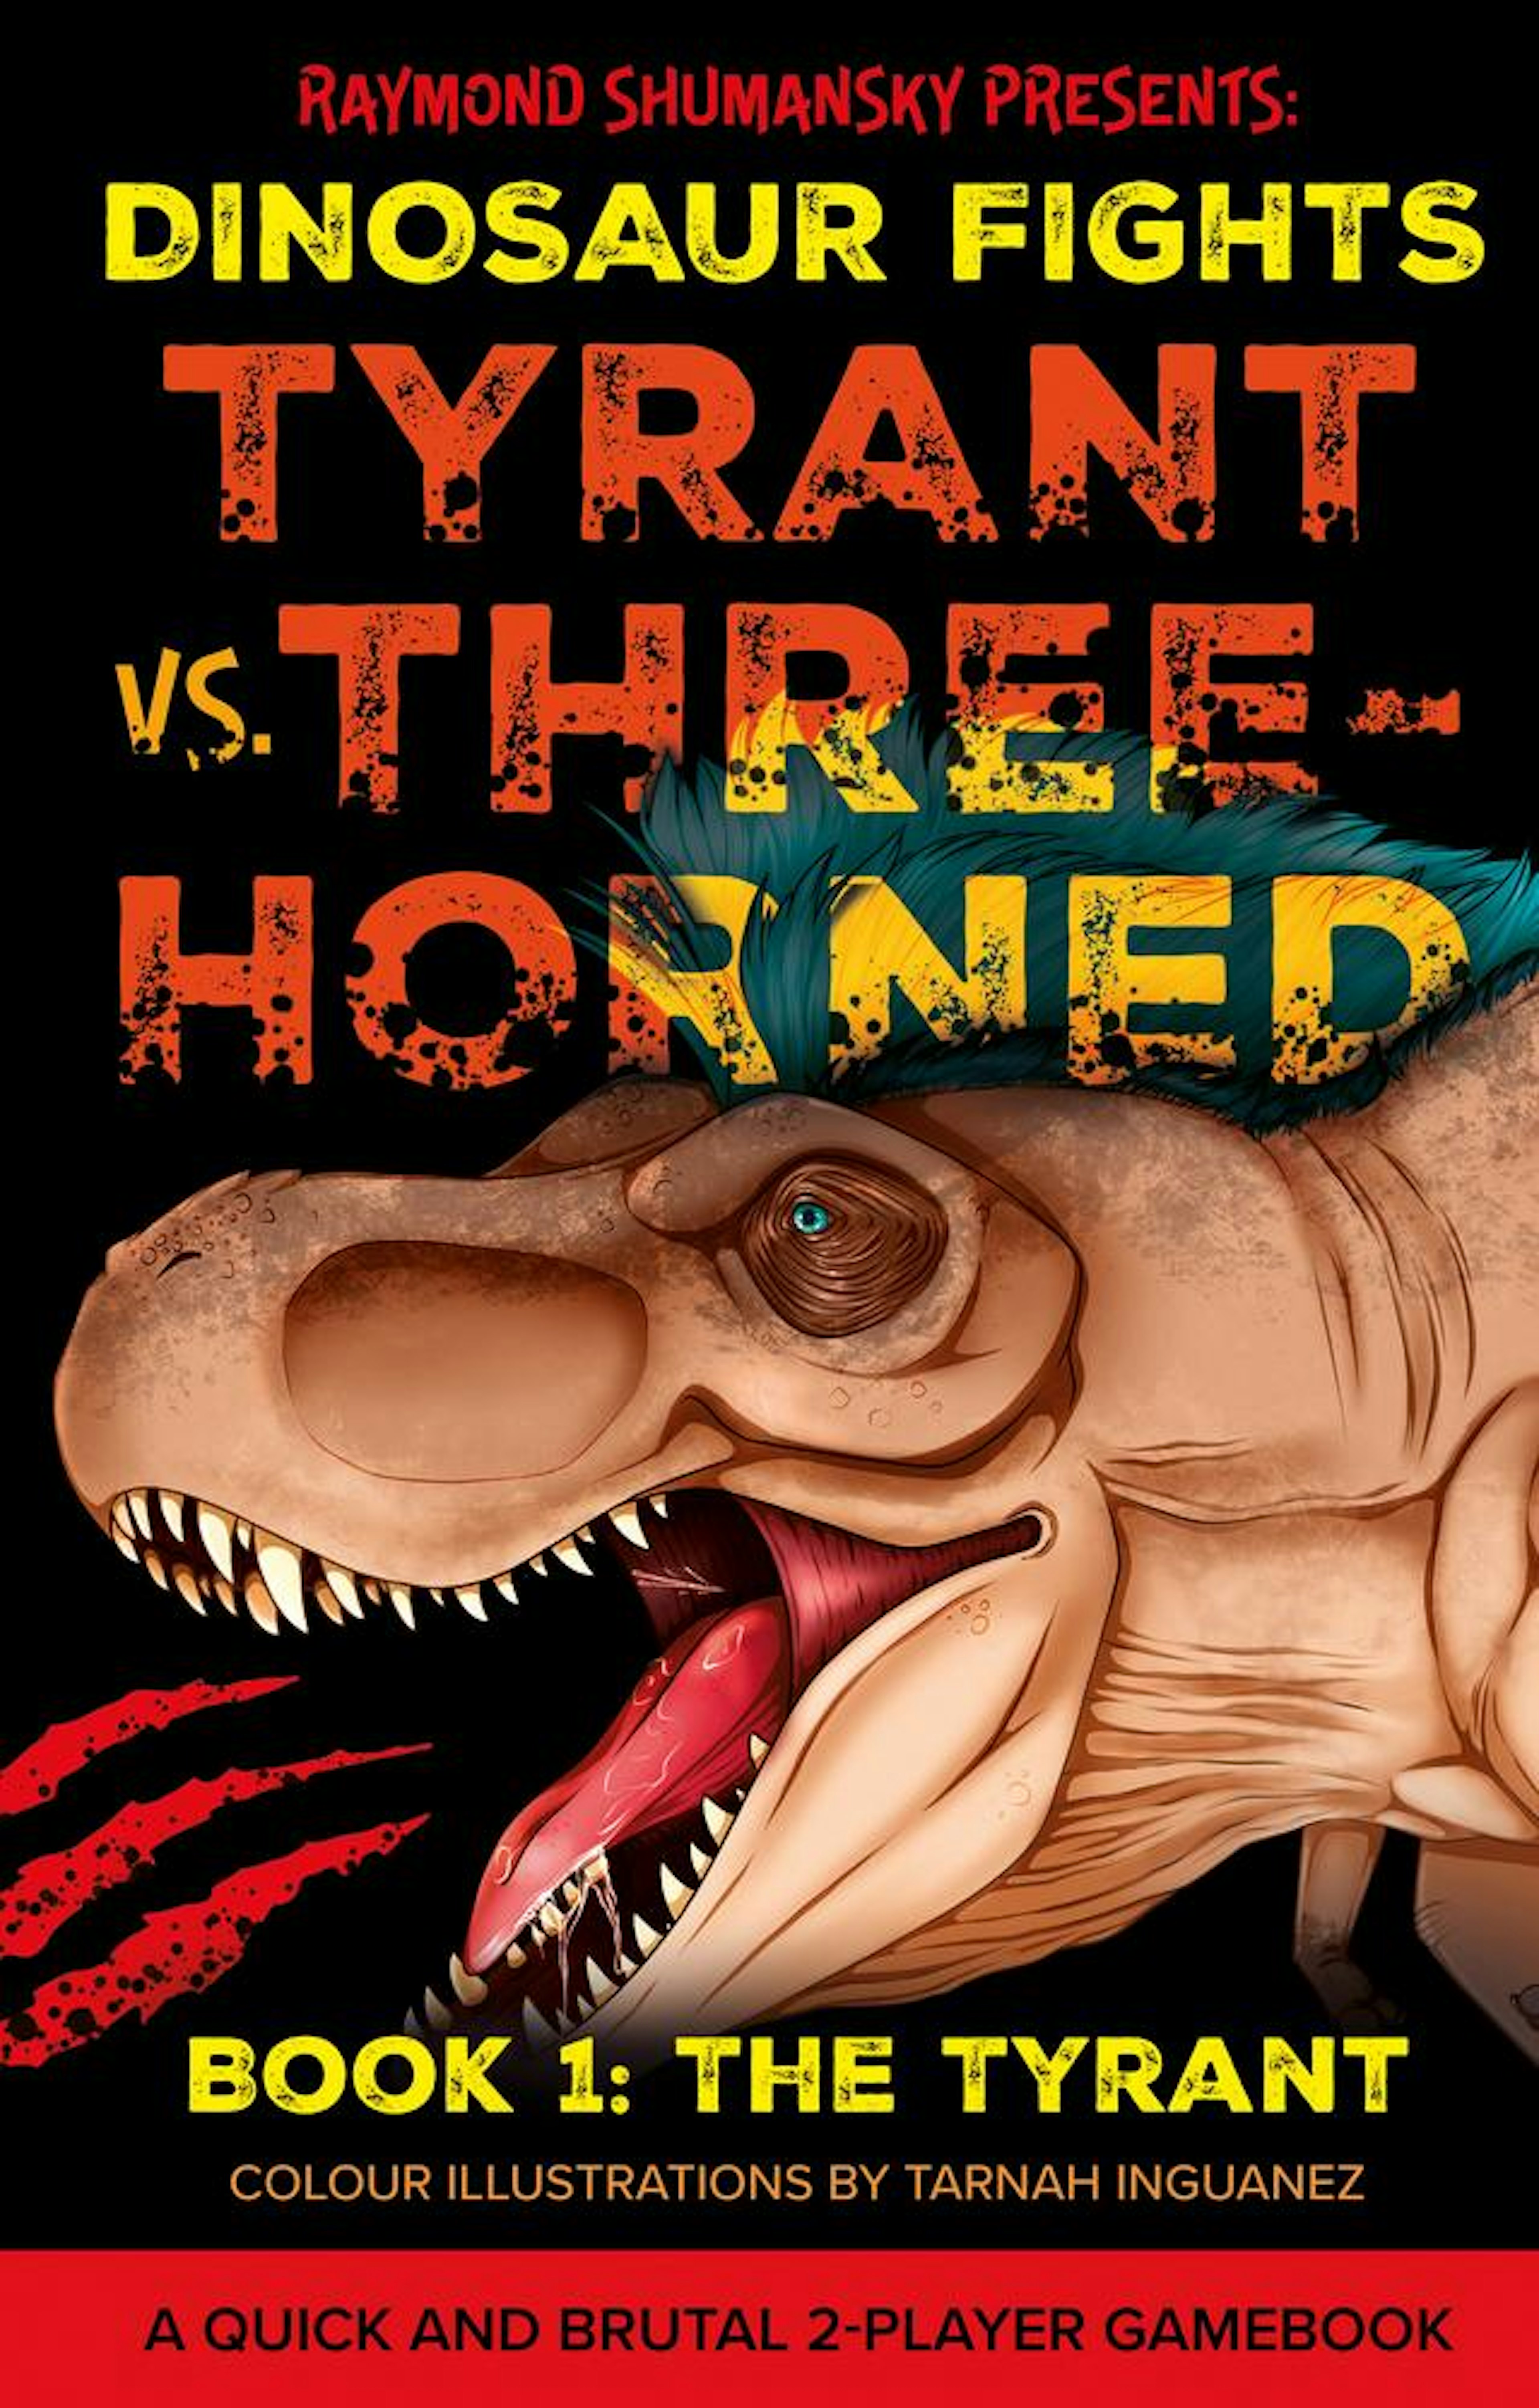 Tyrant vs. Three-Horned